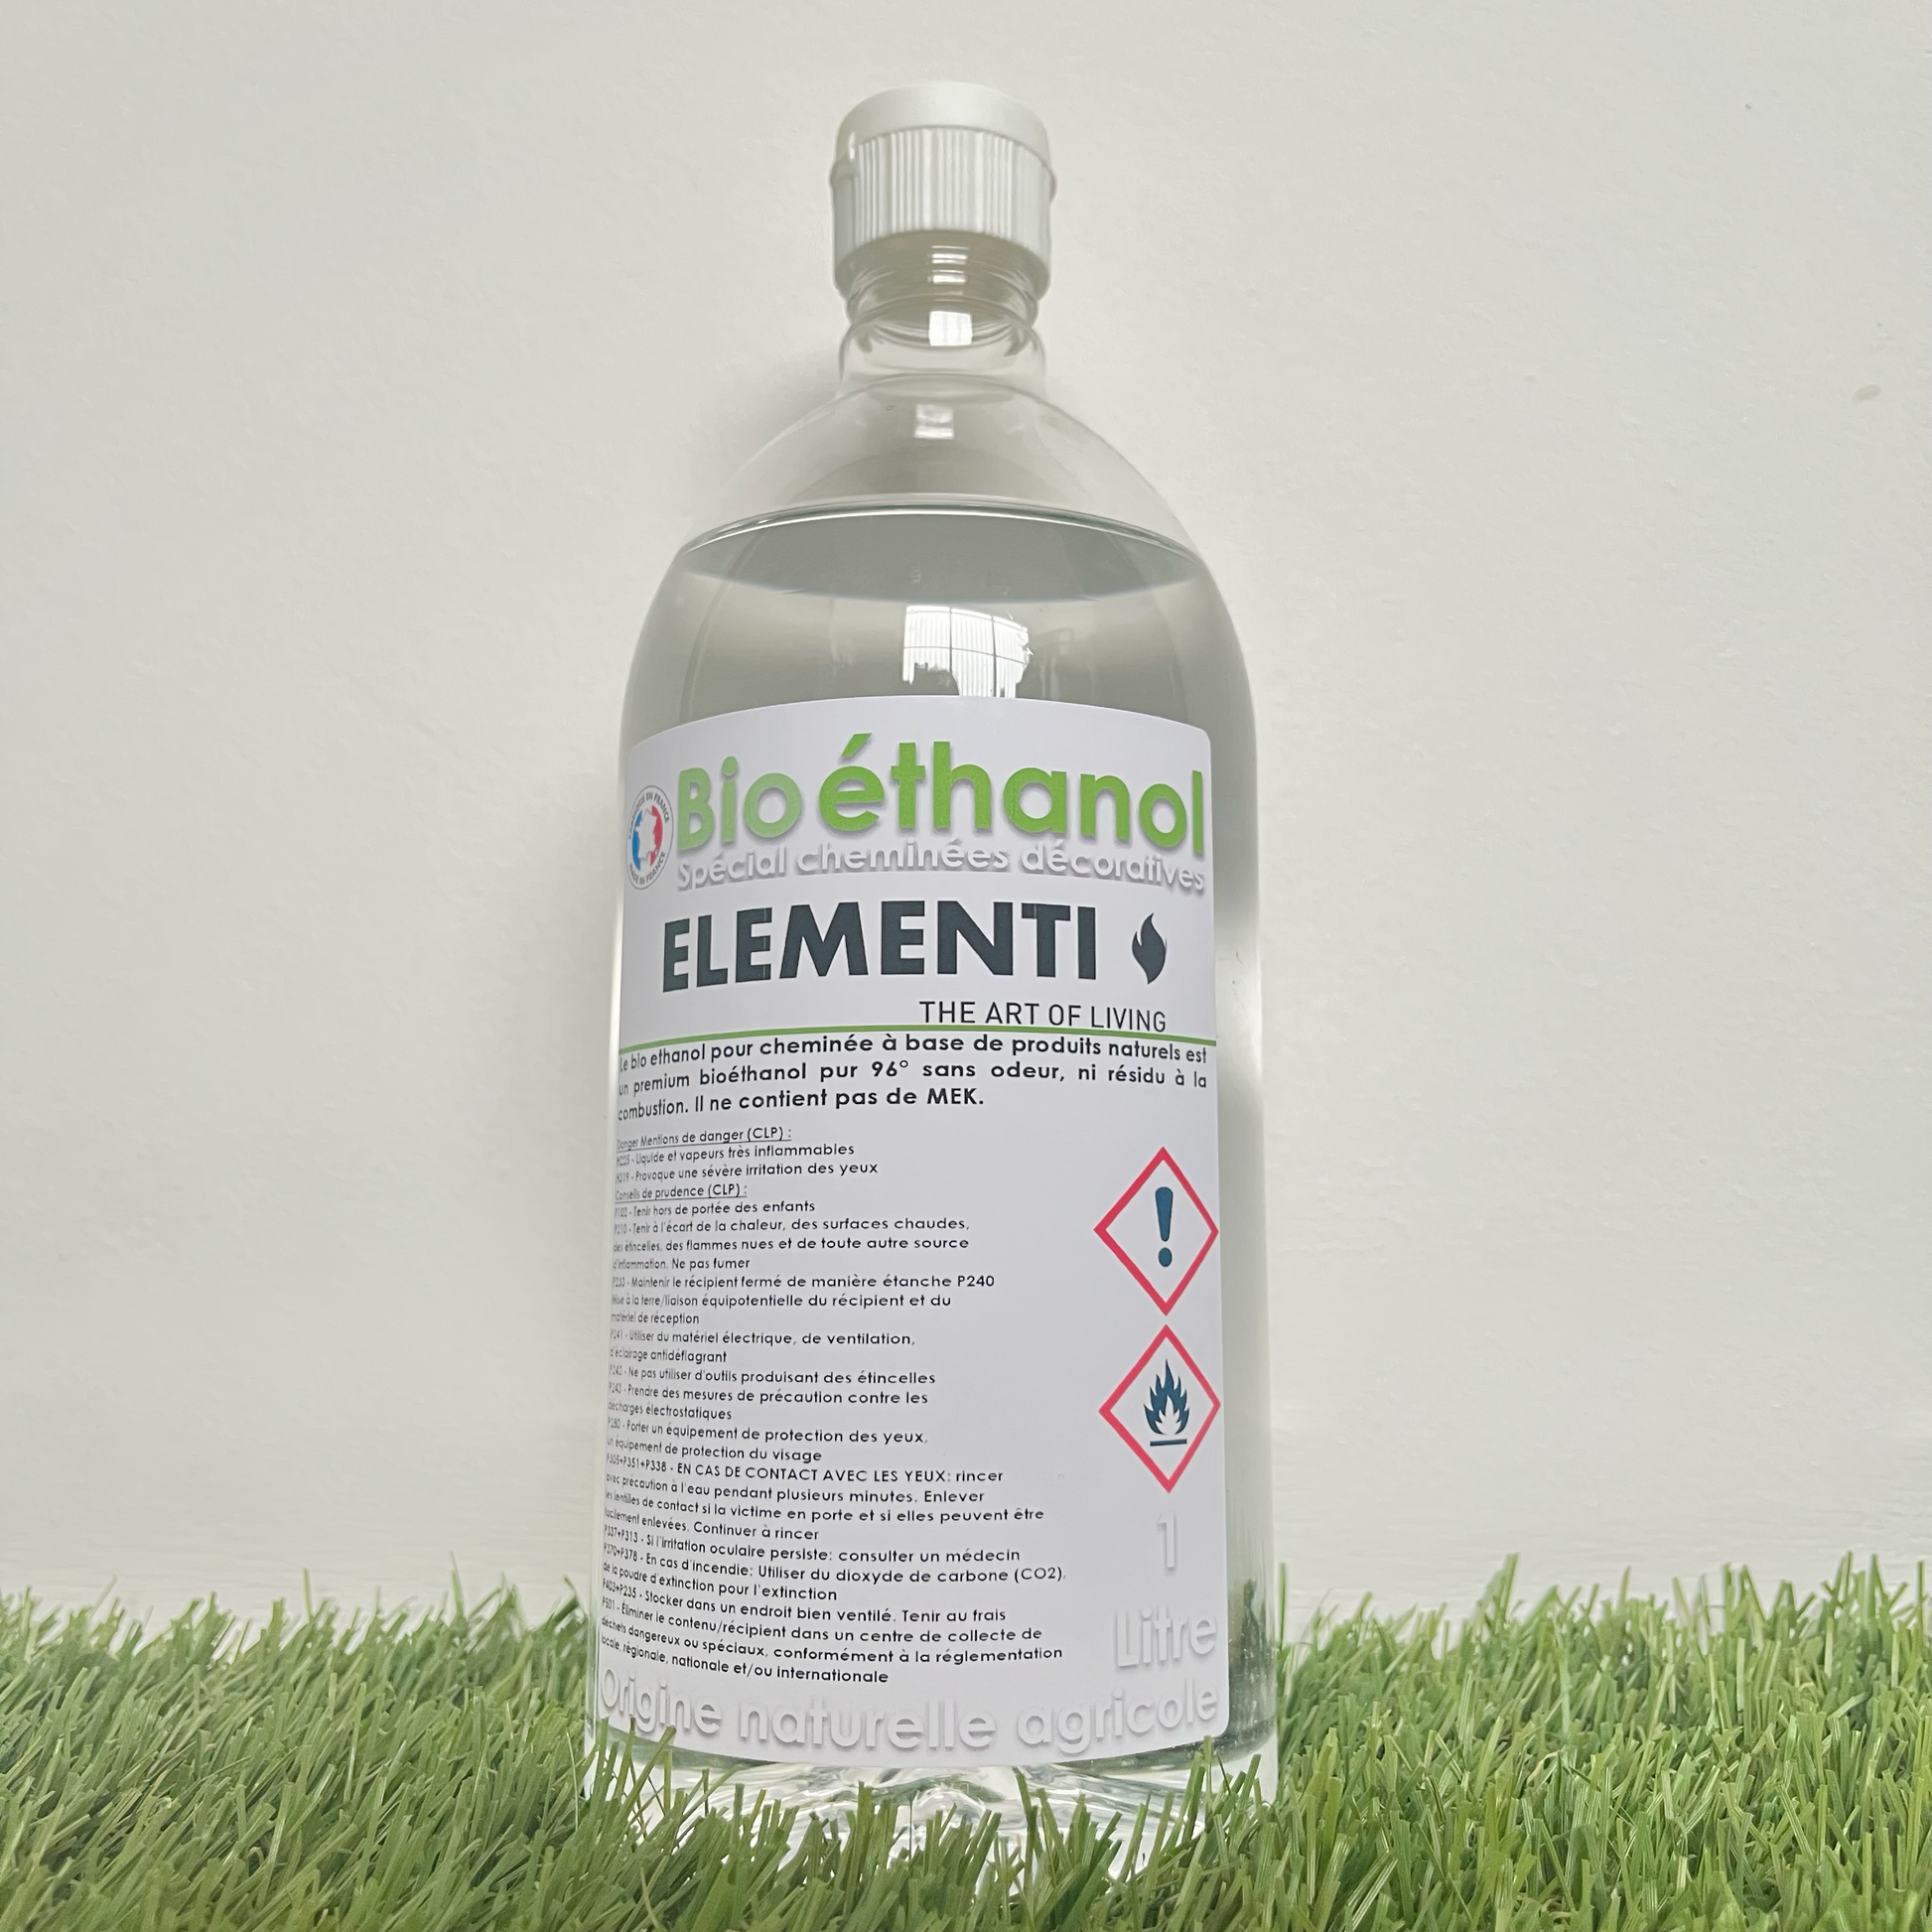 Vente bioethanol : achat bio ethanol liquide pour cheminée sans odeur